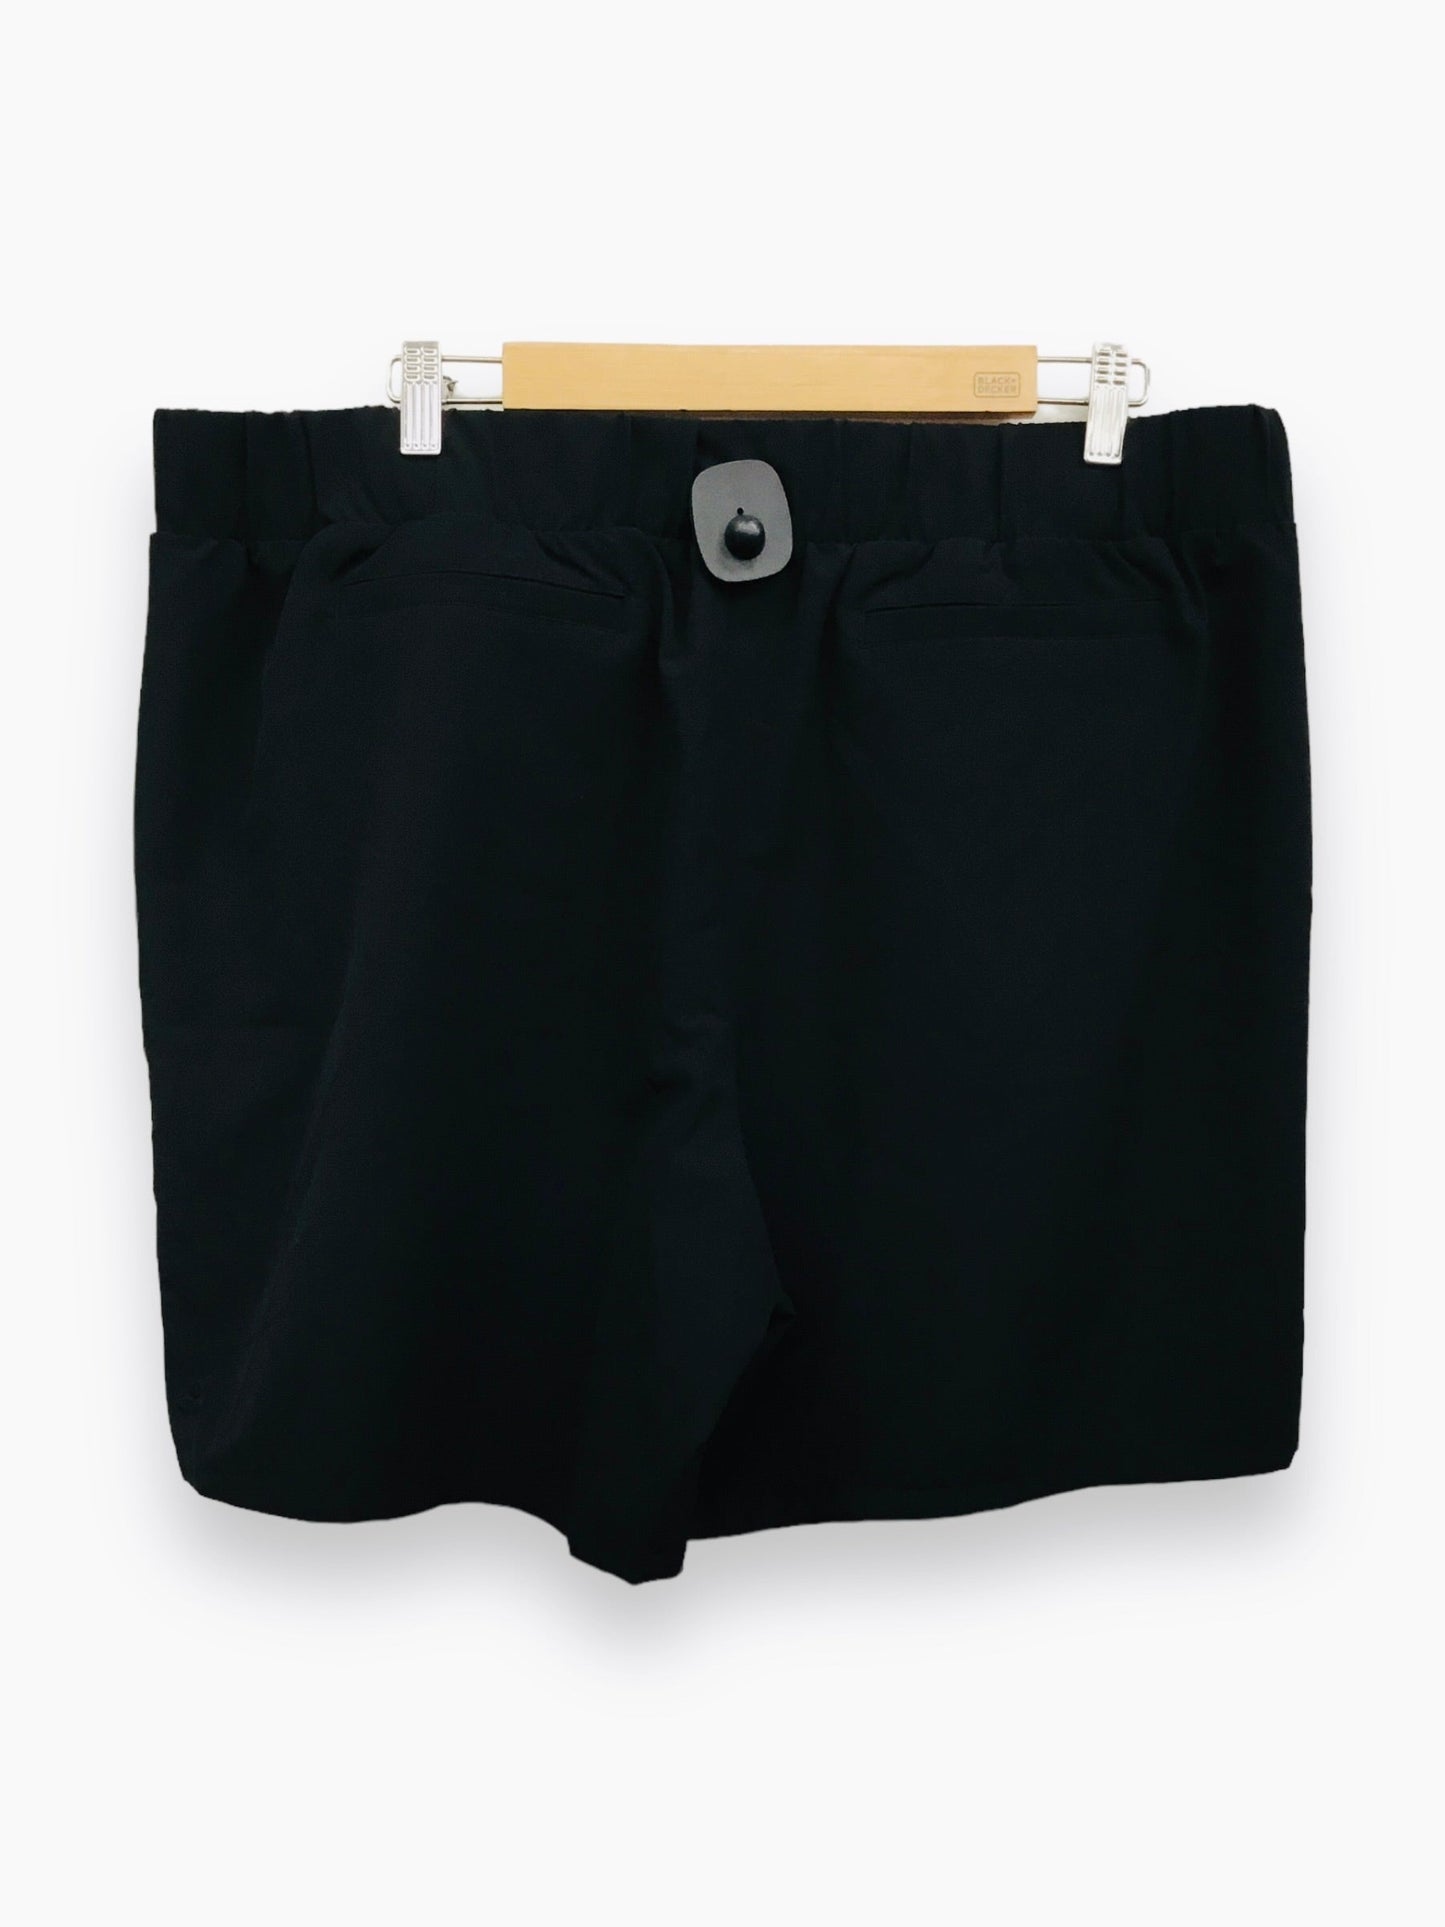 Black Shorts Tek Gear, Size 2x